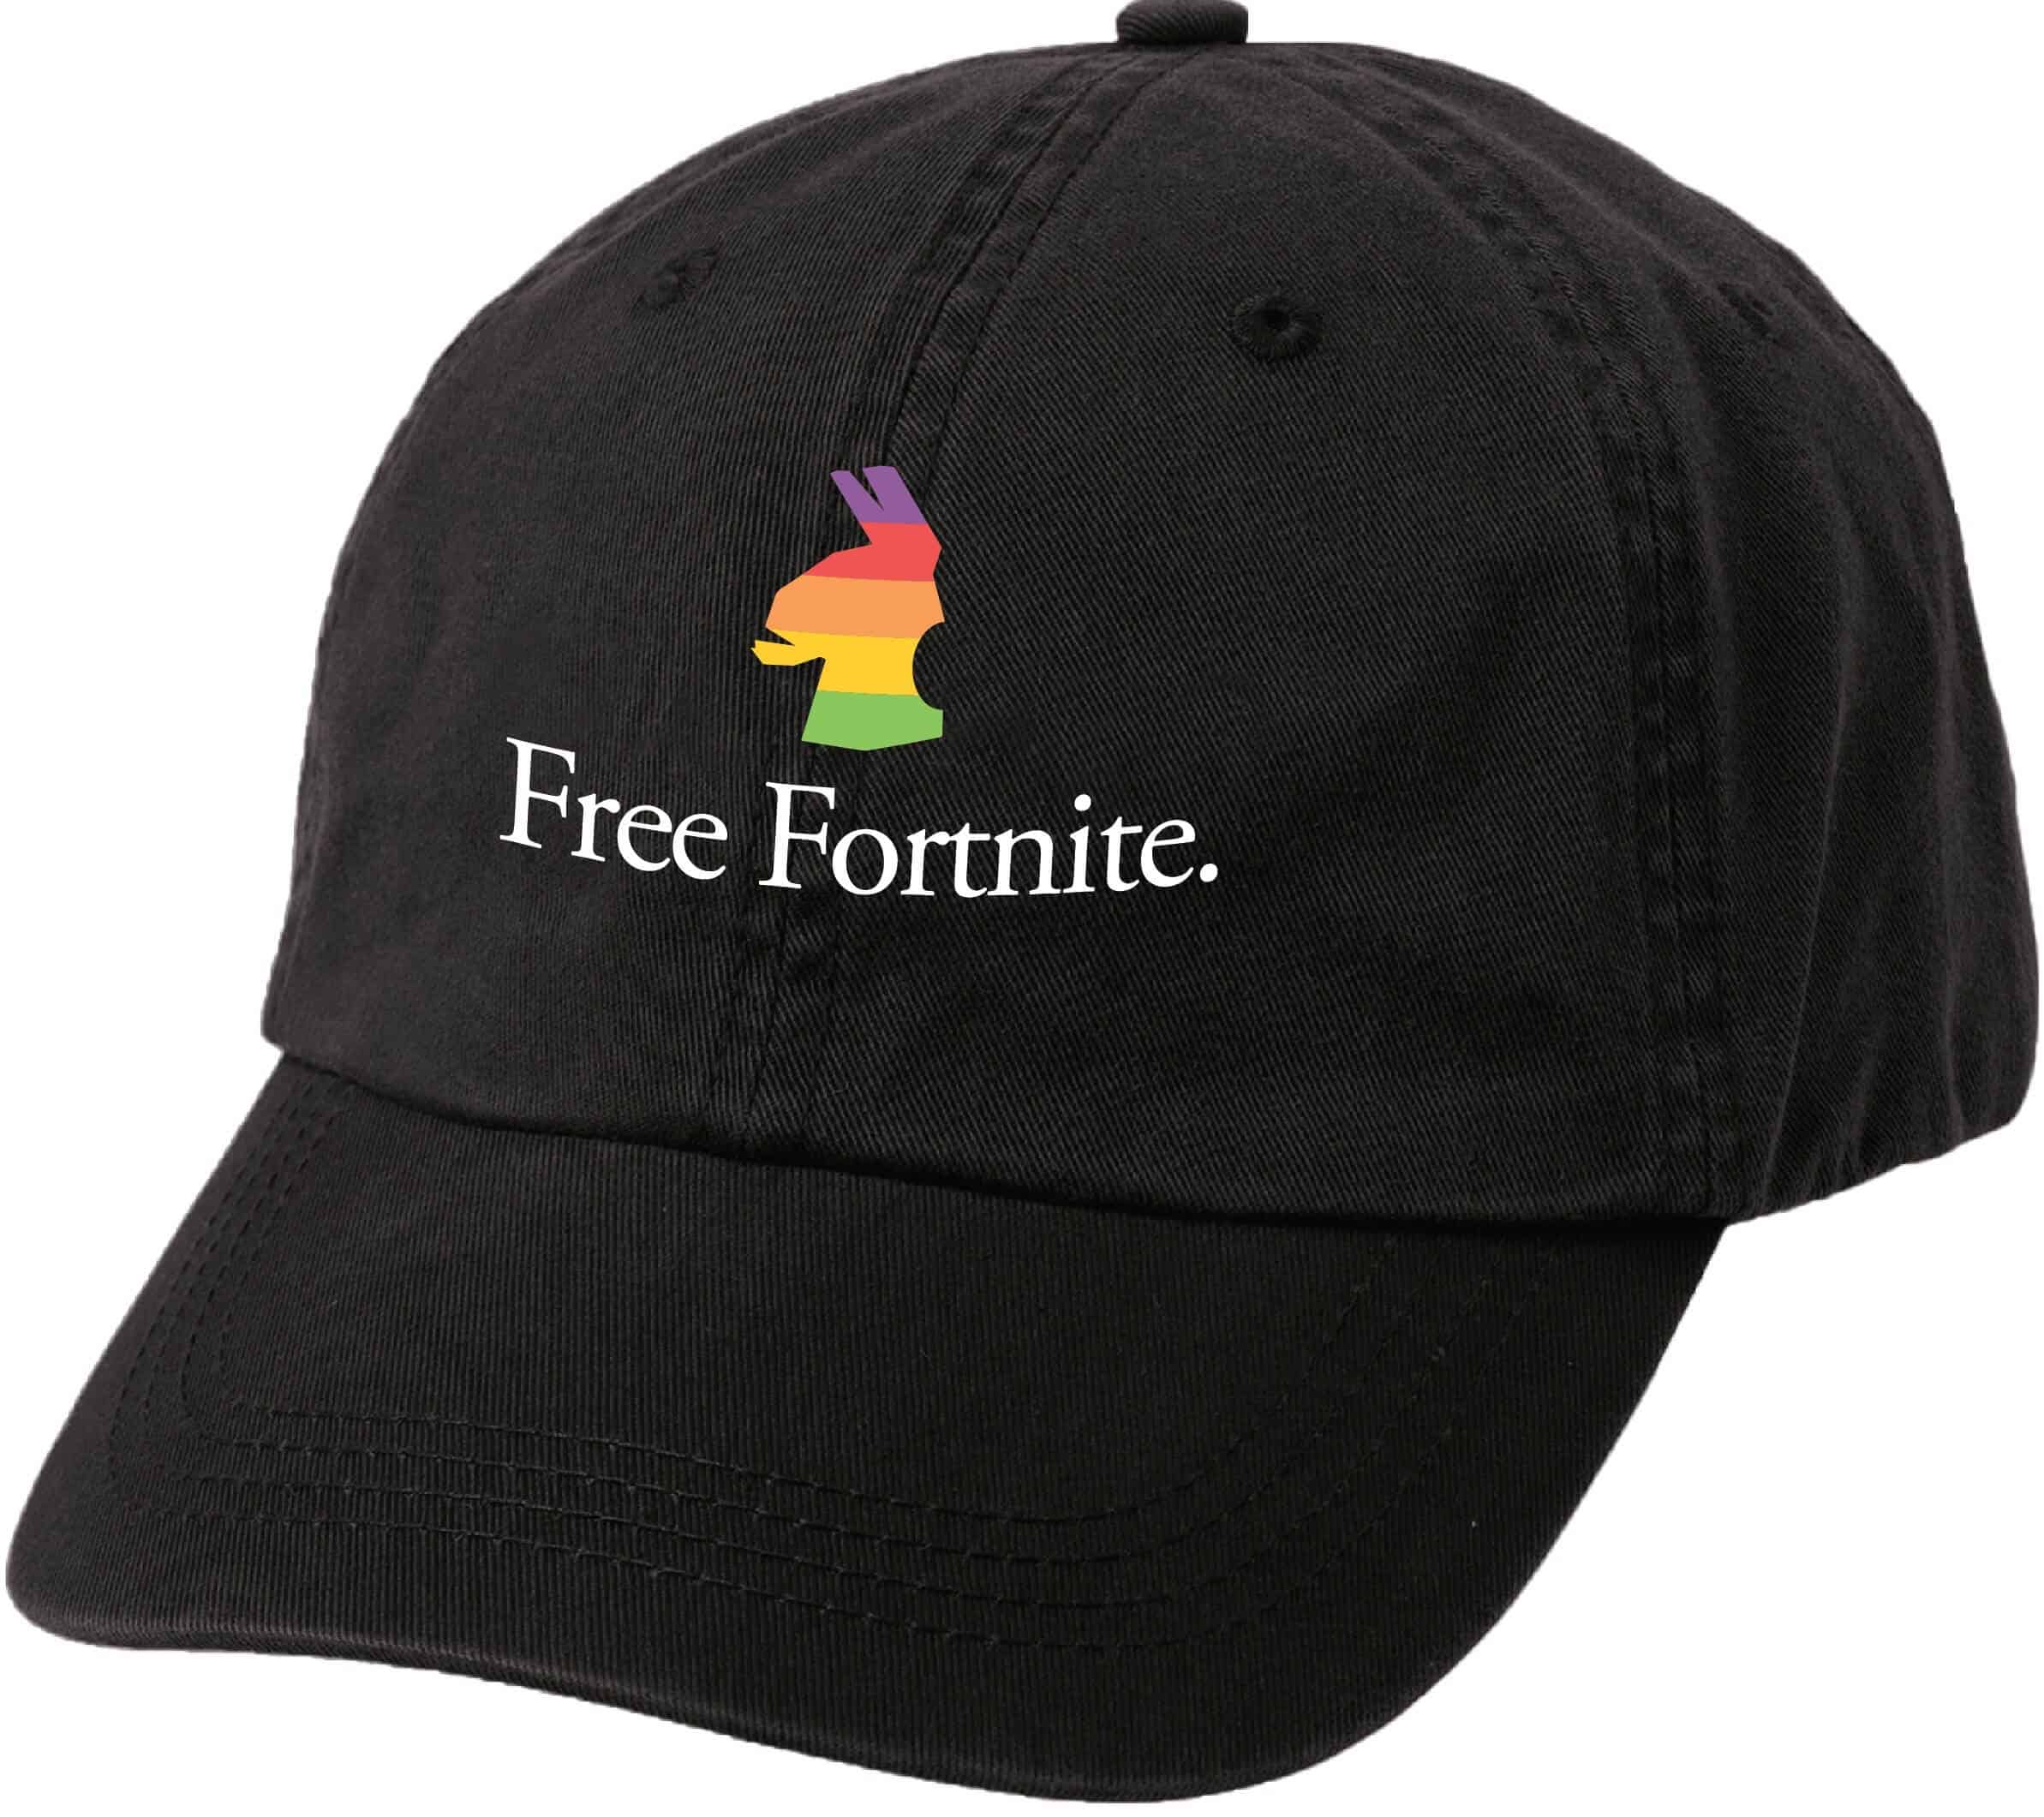 Gratis fortnite-hoed